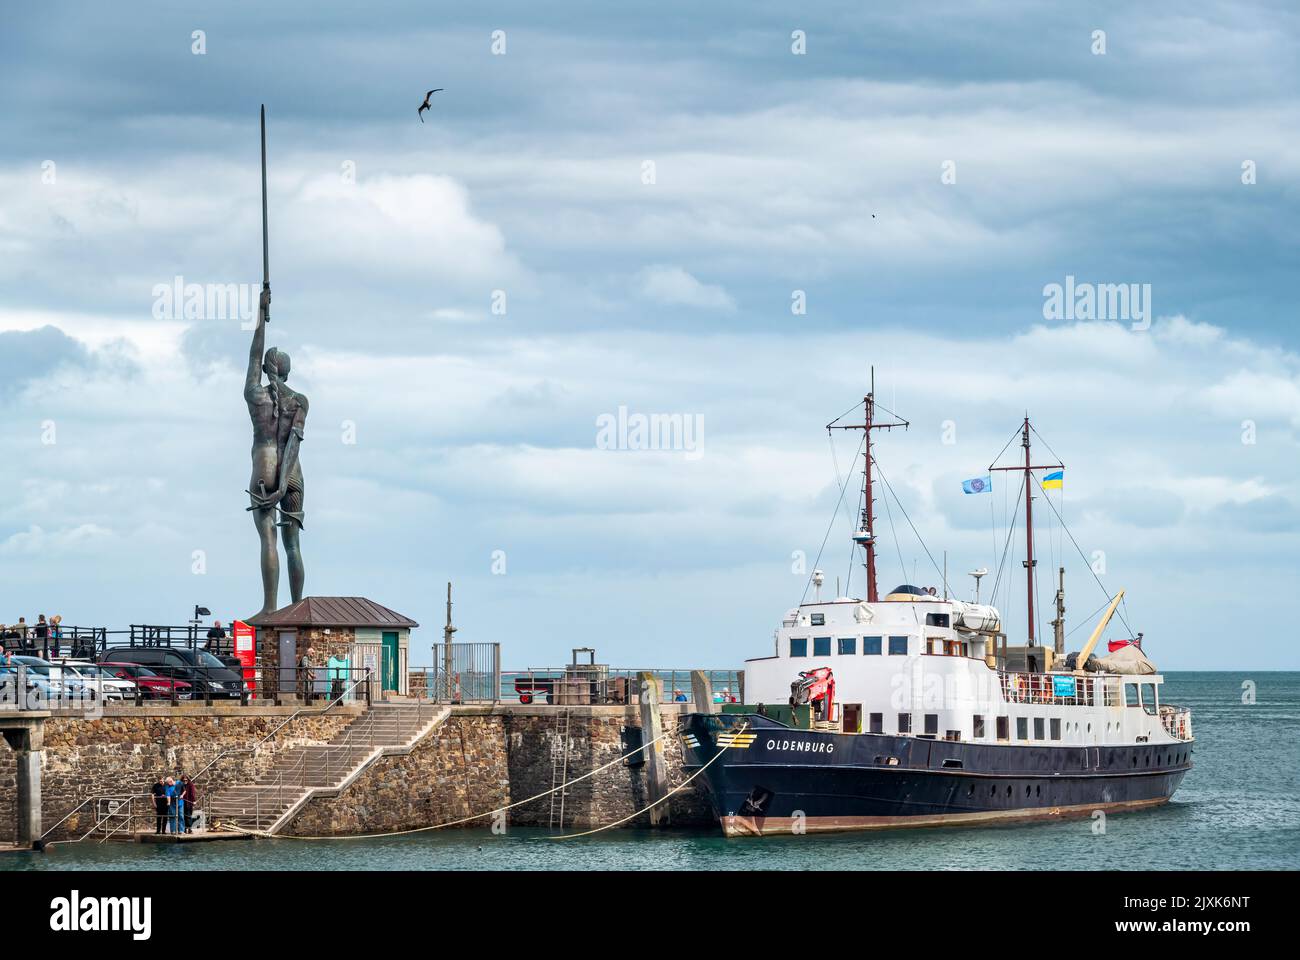 El barco de suministro de la isla Lundy y el barco de pasajeros MV Oldenburg amarrado junto al muelle, con la famosa estatua de Damien Hirst Verity en el fondo Foto de stock